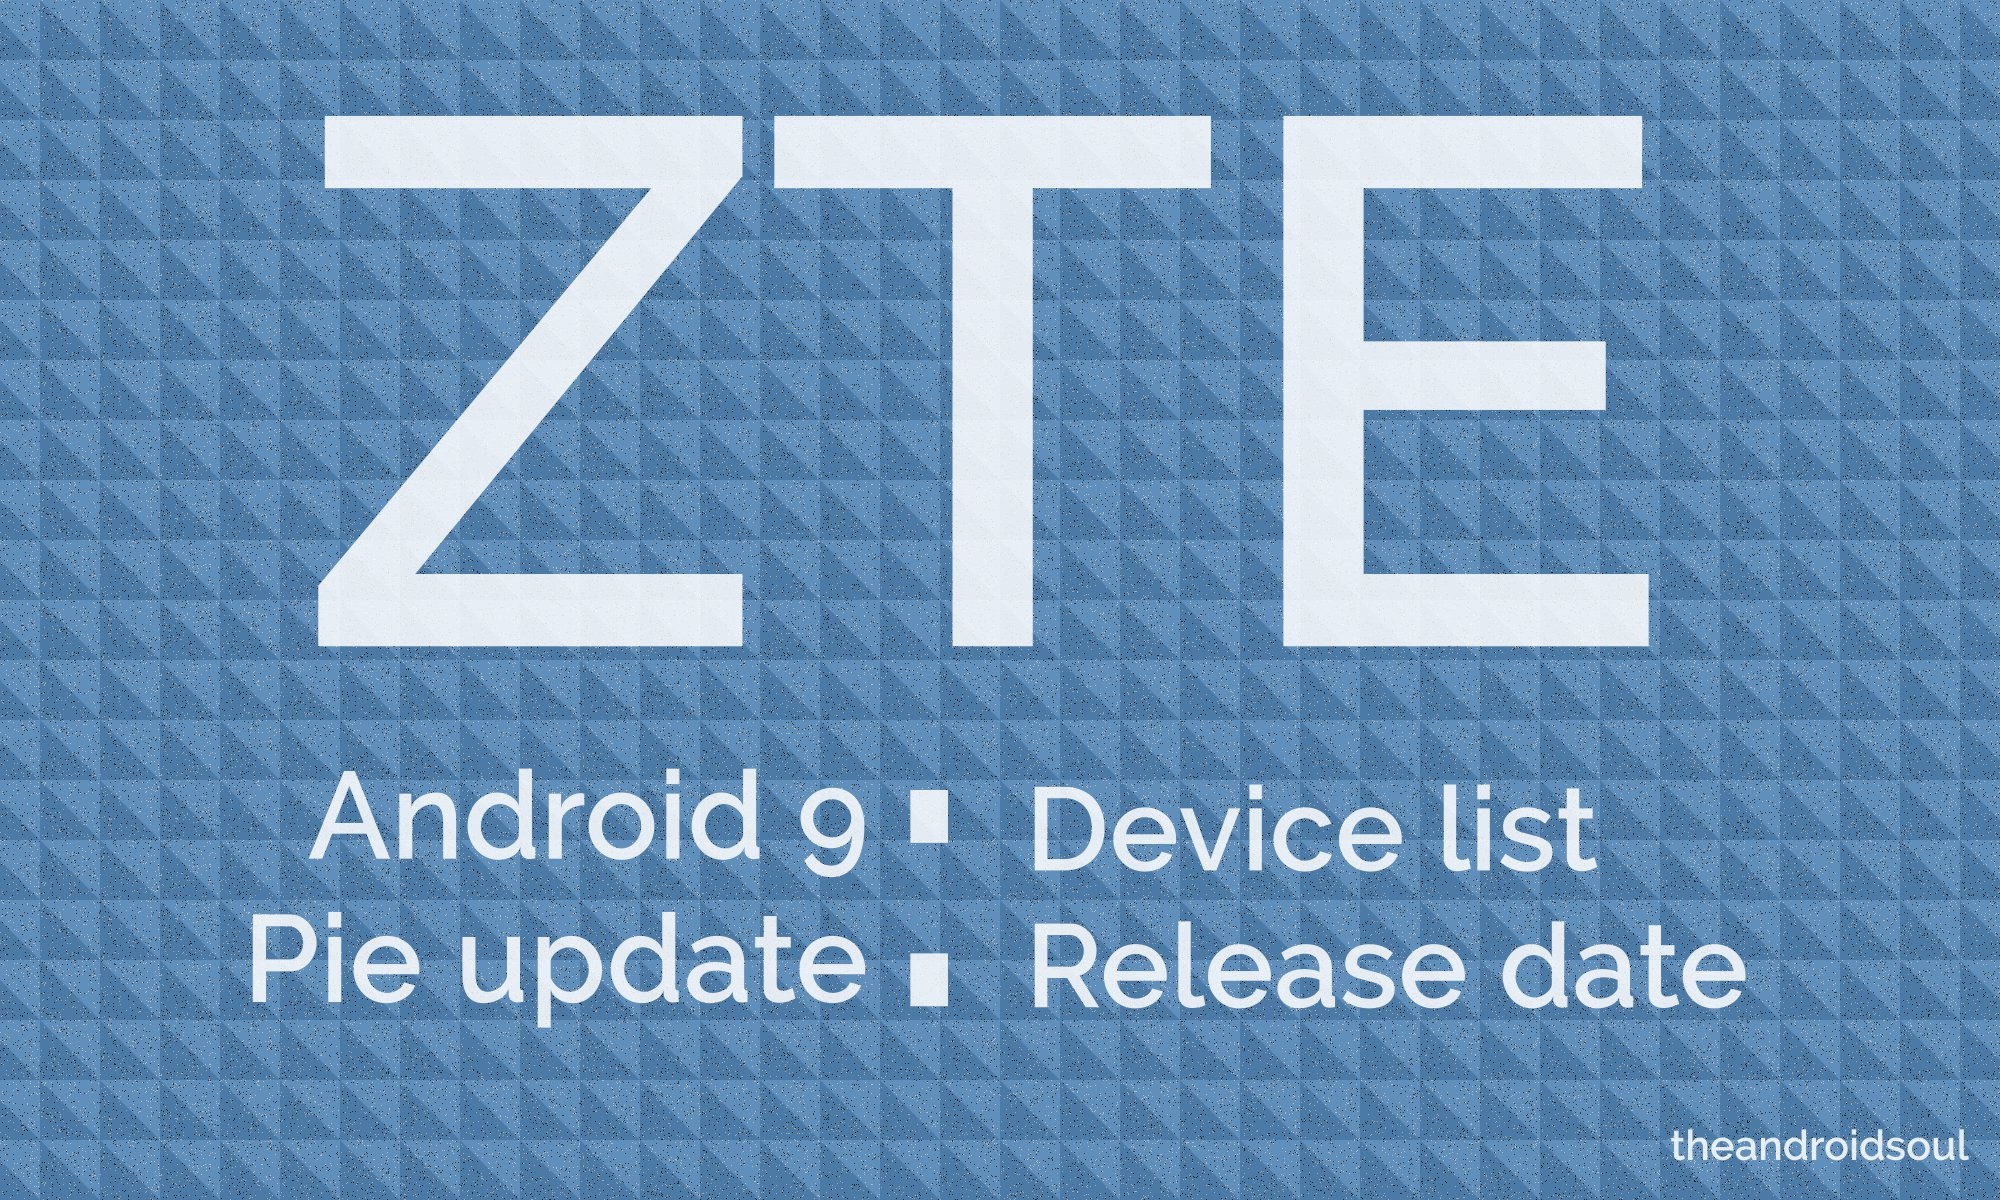 ZTE Android 9 Pie update